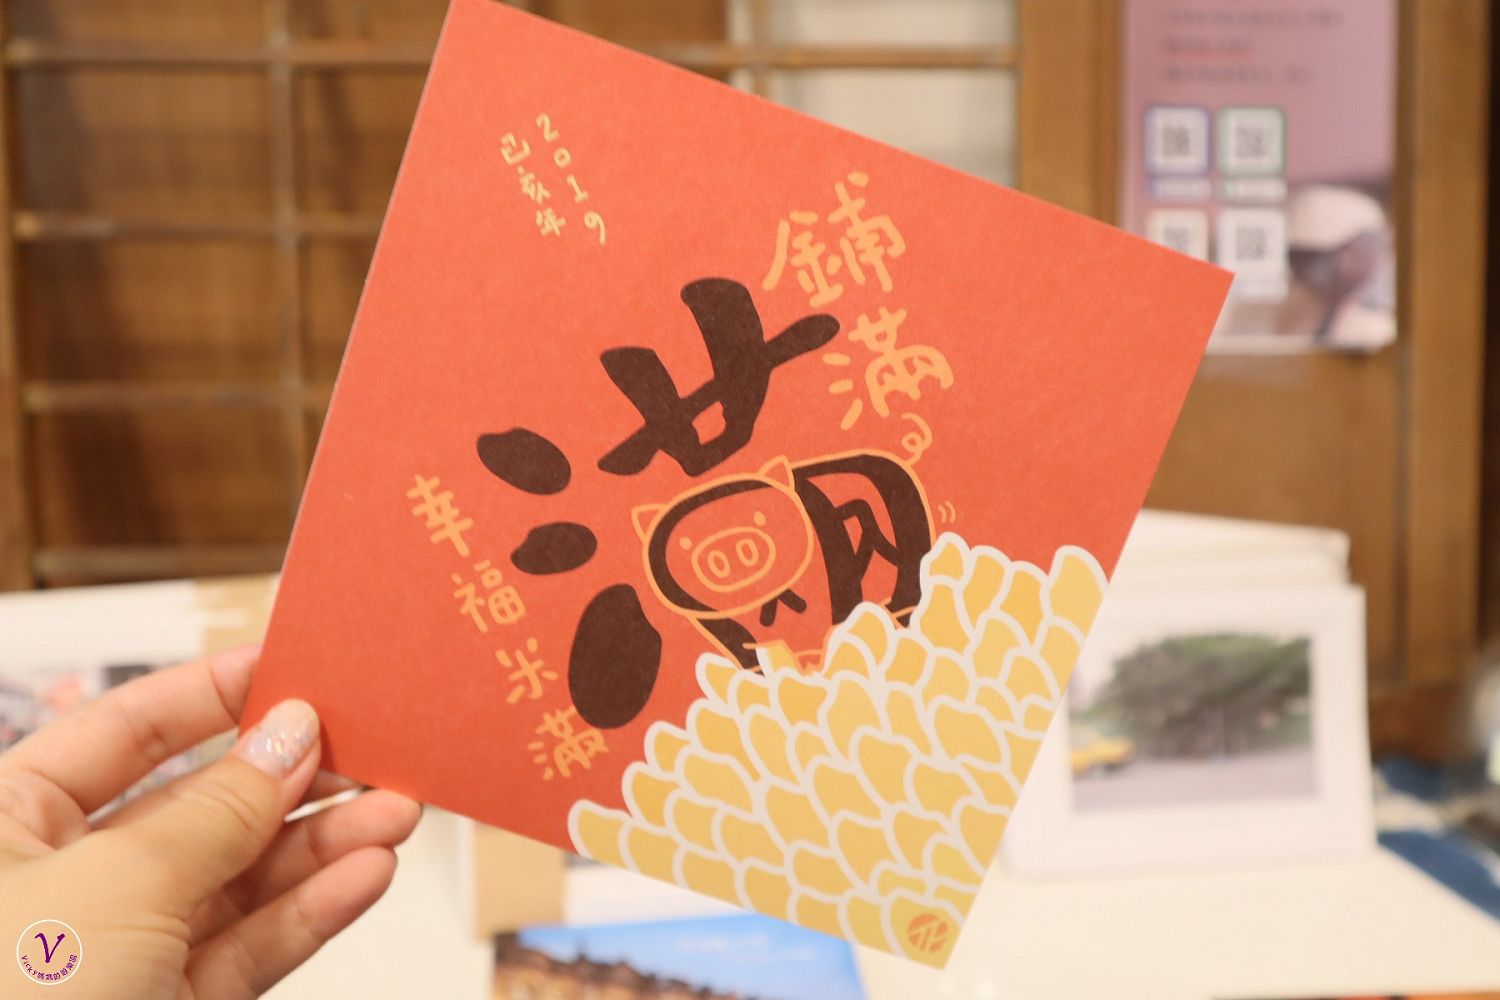 文化教育︱碾米機的時光小旅行：帶著孩子一起認識臺灣百年歷史和米食文化，培養出會思考的孩子，這就是108課綱素養